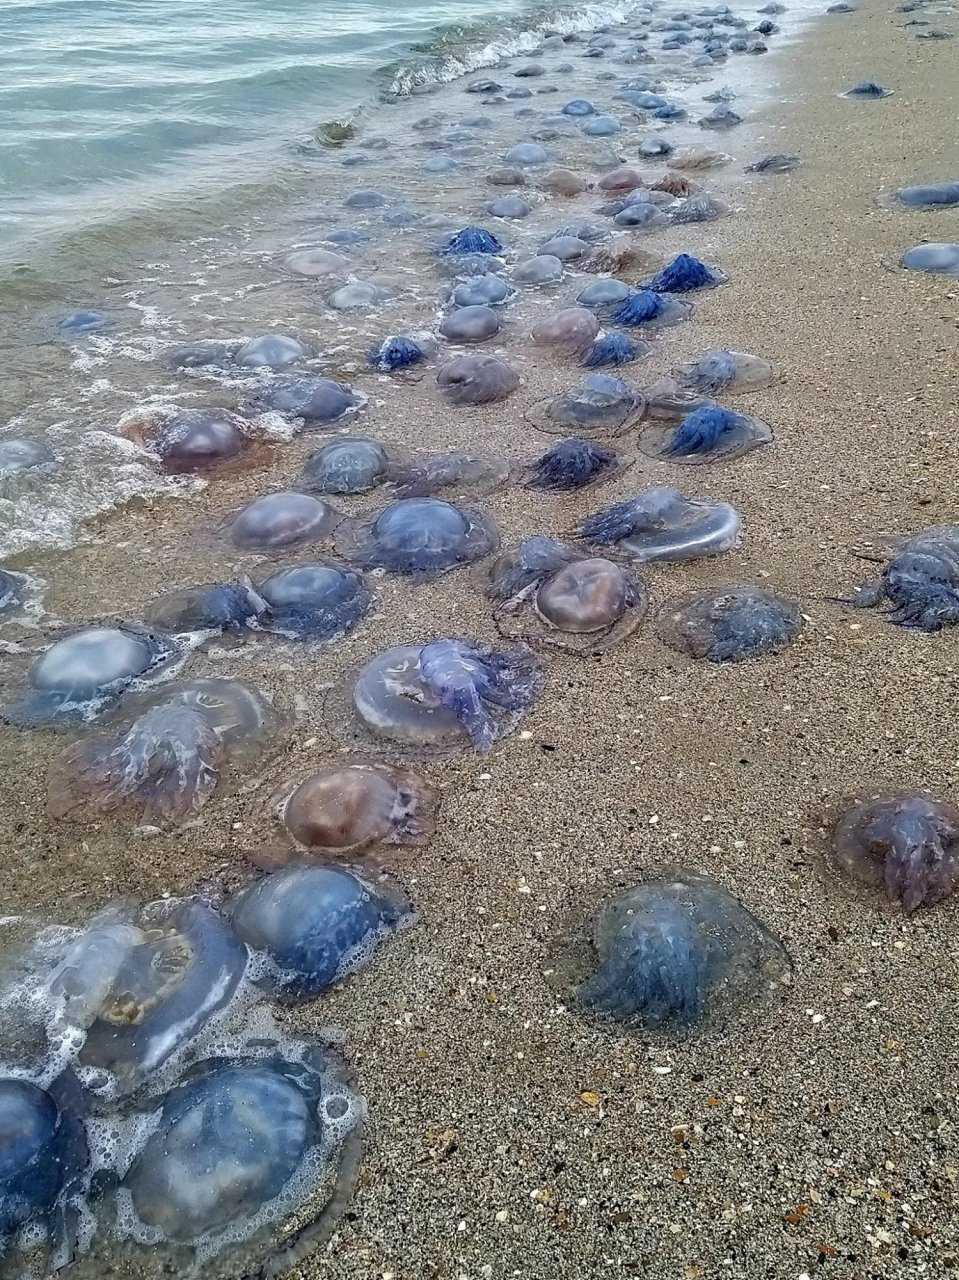 11 фактов о медузах — загадочных морских животных, которые доказывают, что природа умеет подкидывать сюрпризы